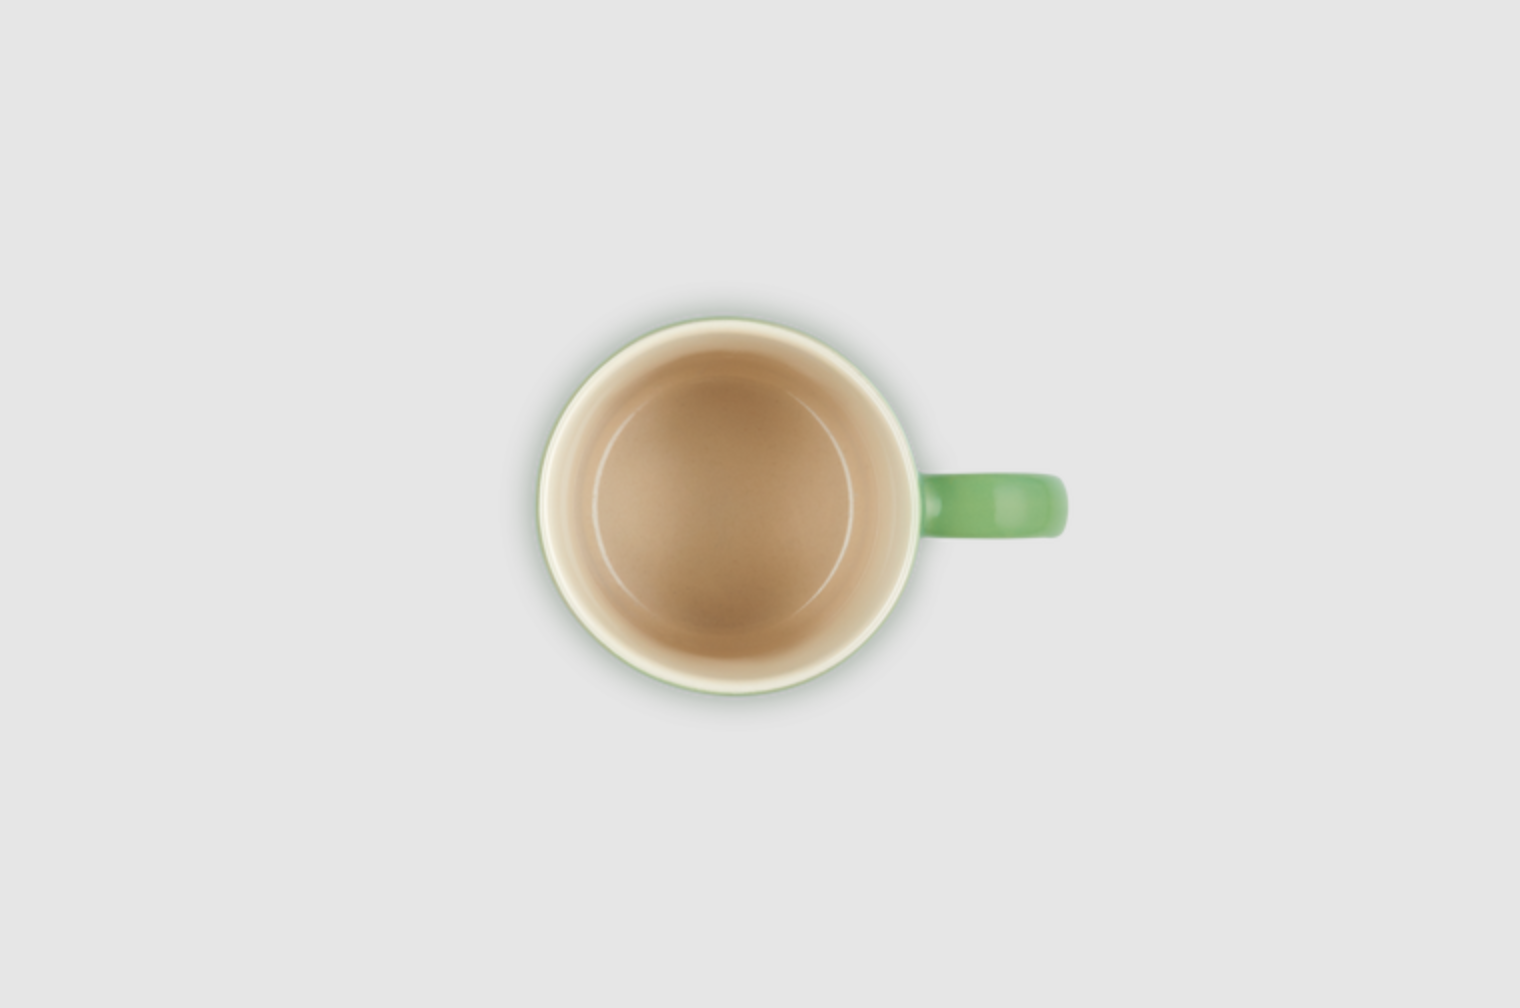 Le Creuset 100ml Espresso Mug Bamboo green - Mugs, Tea, Coffee & Mugs ...